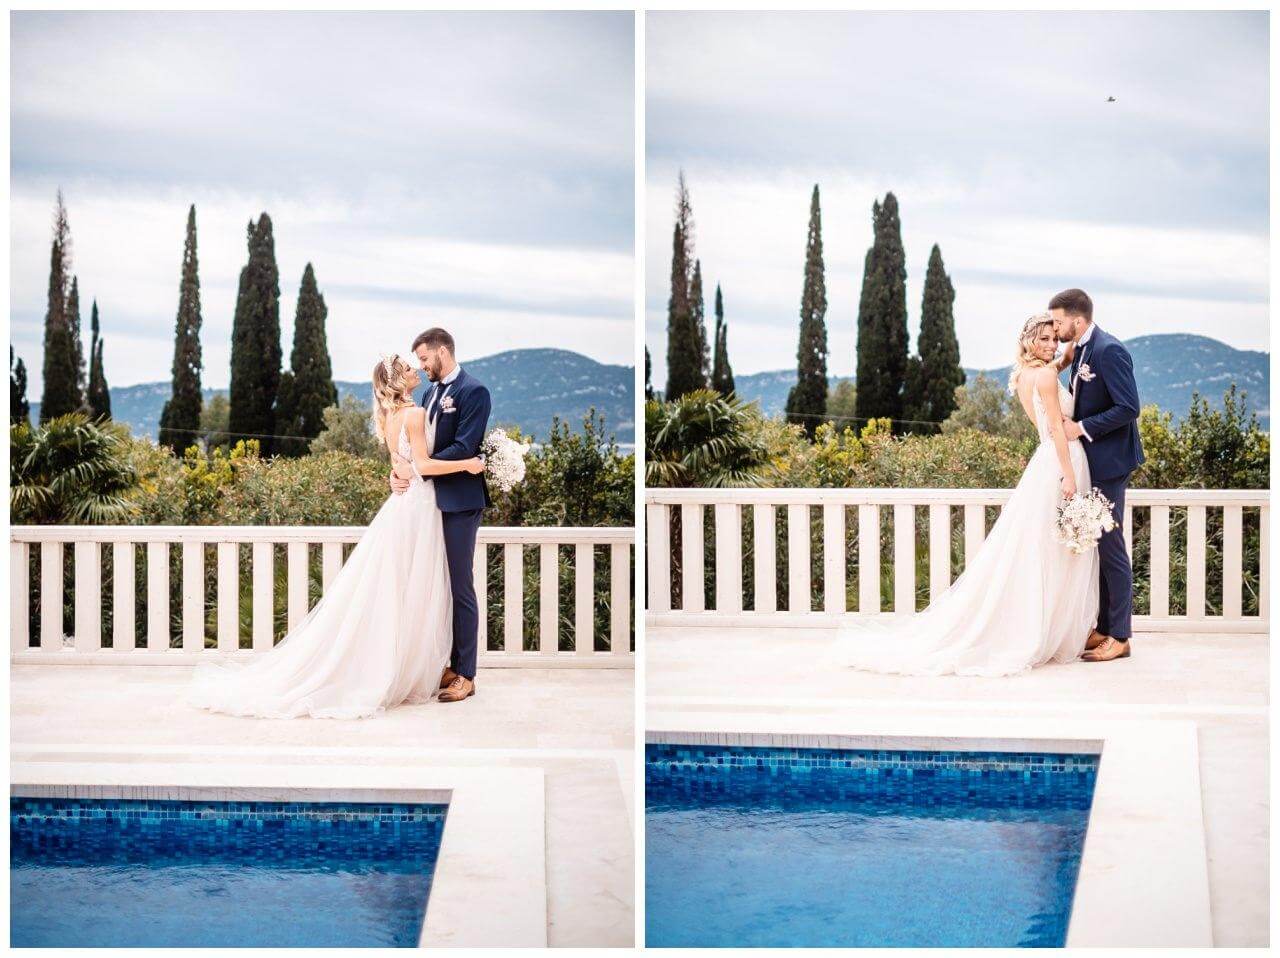 Brautpaar mit Schleierkraut Brautstrauß vor Pool einer Villa in Kroatien Wedding Kroatien, wedding in croatia,hochzeitsplanerin kroatien, hochzeit in kroatien